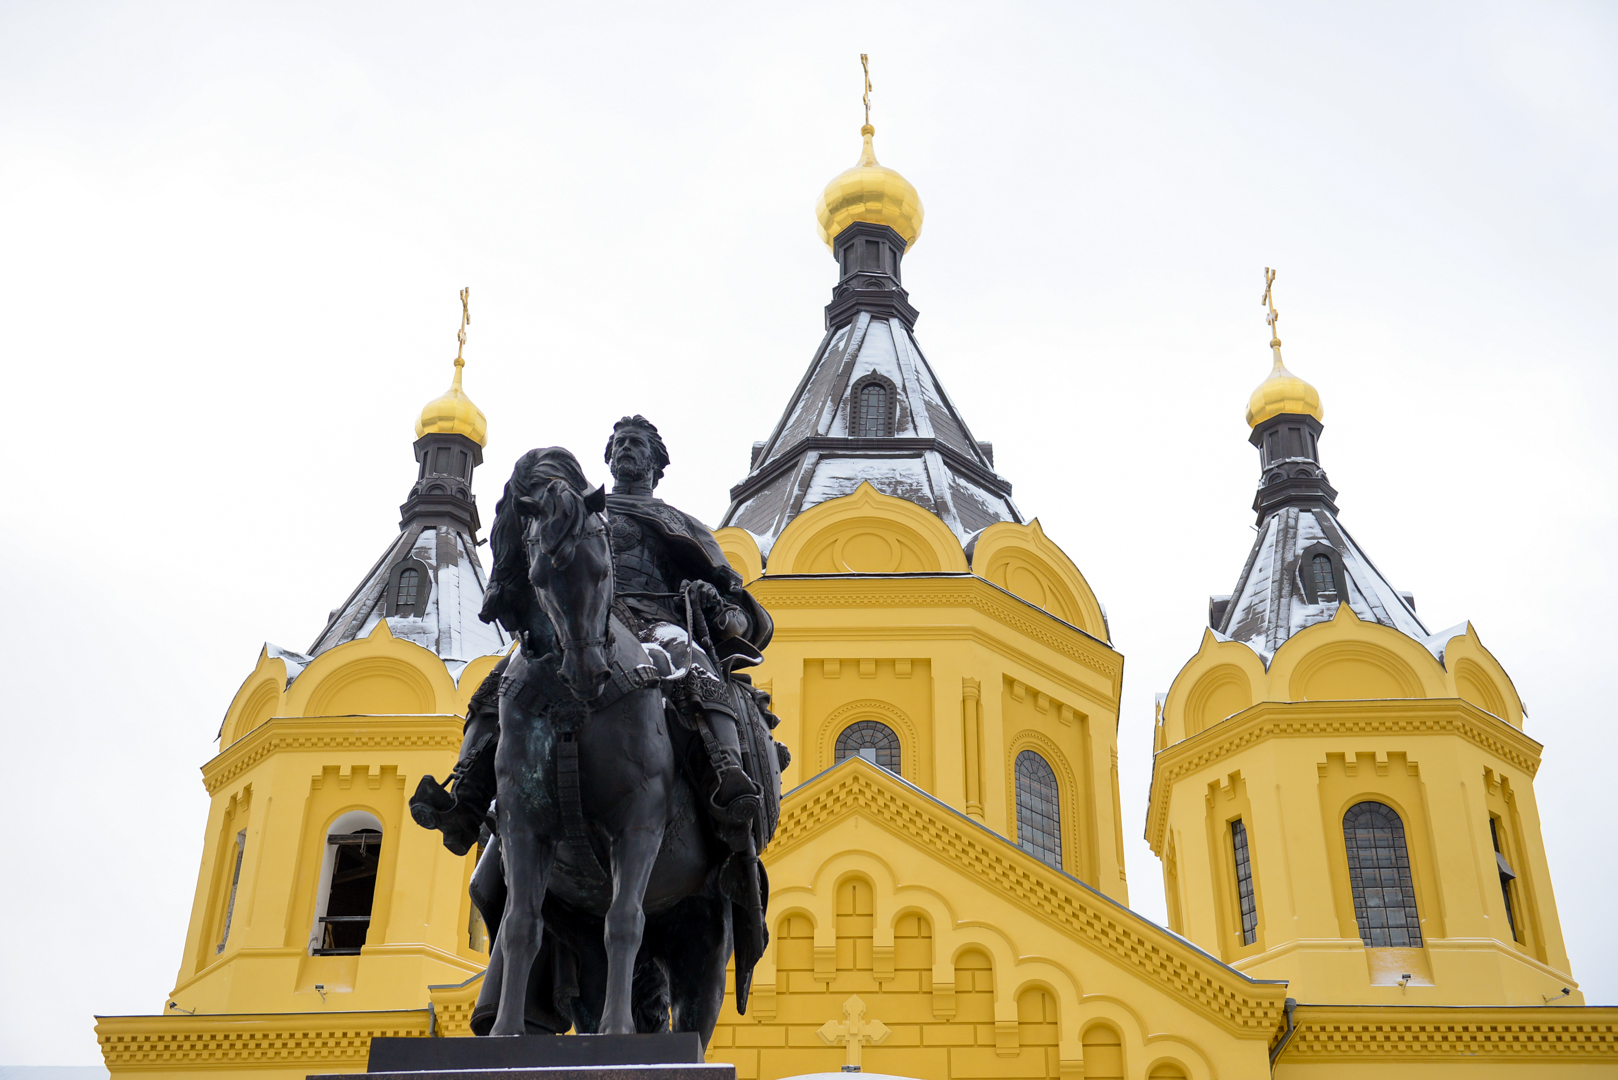 Где памятник александру невскому в нижнем новгороде. Памятник Александру Невскому в Нижнем Новгороде.